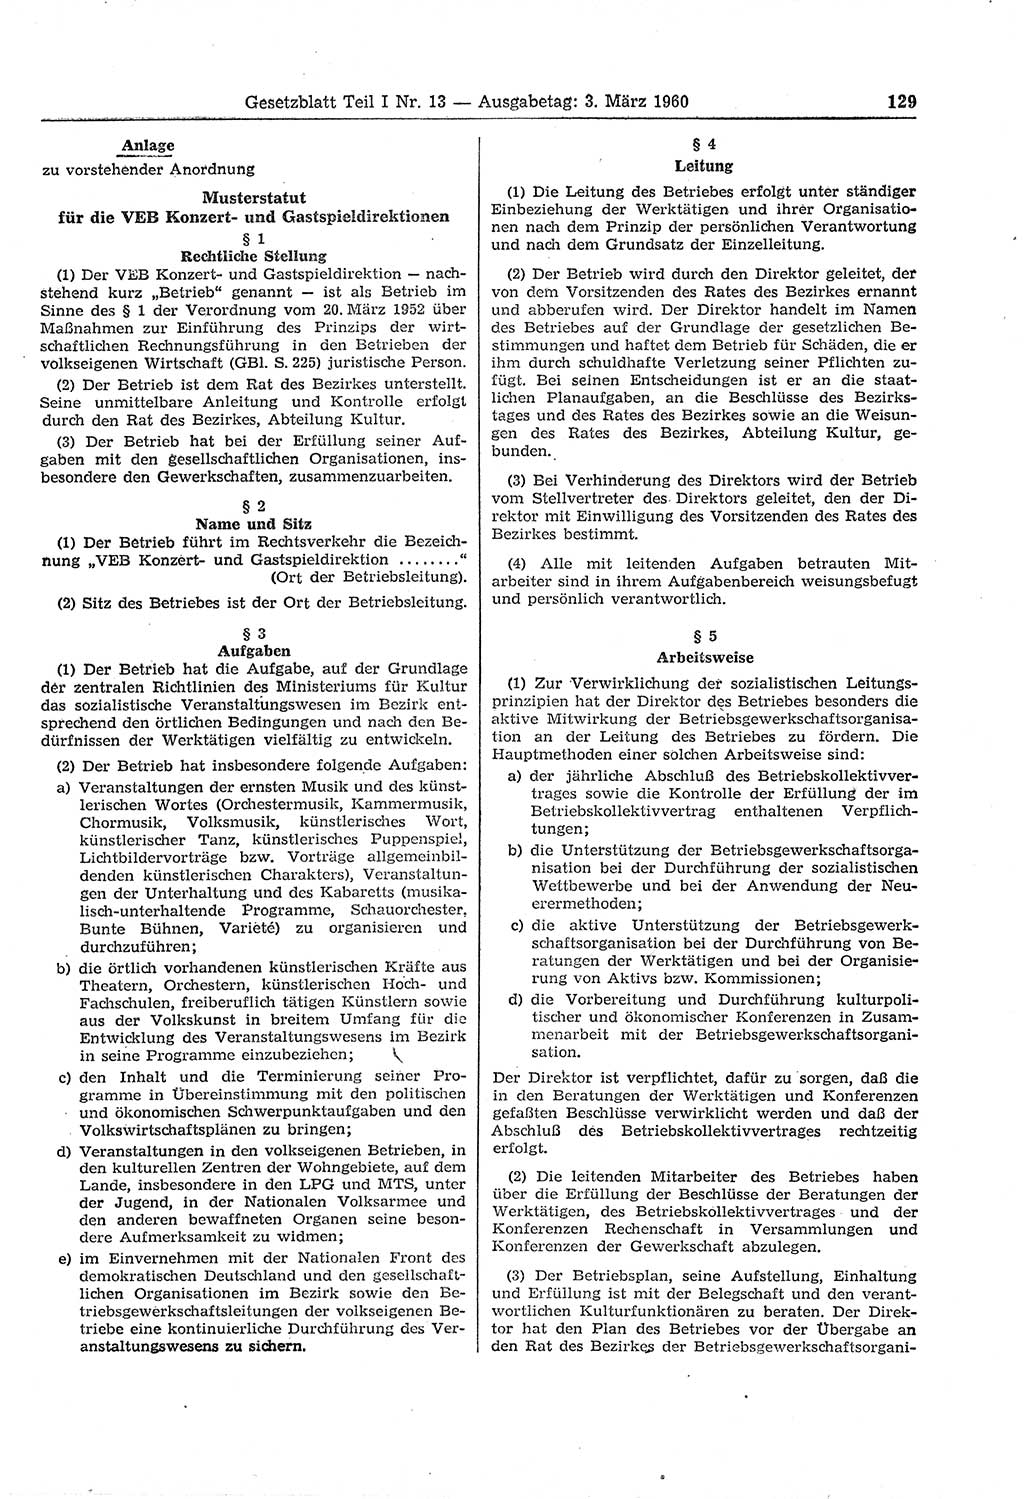 Gesetzblatt (GBl.) der Deutschen Demokratischen Republik (DDR) Teil Ⅰ 1960, Seite 129 (GBl. DDR Ⅰ 1960, S. 129)